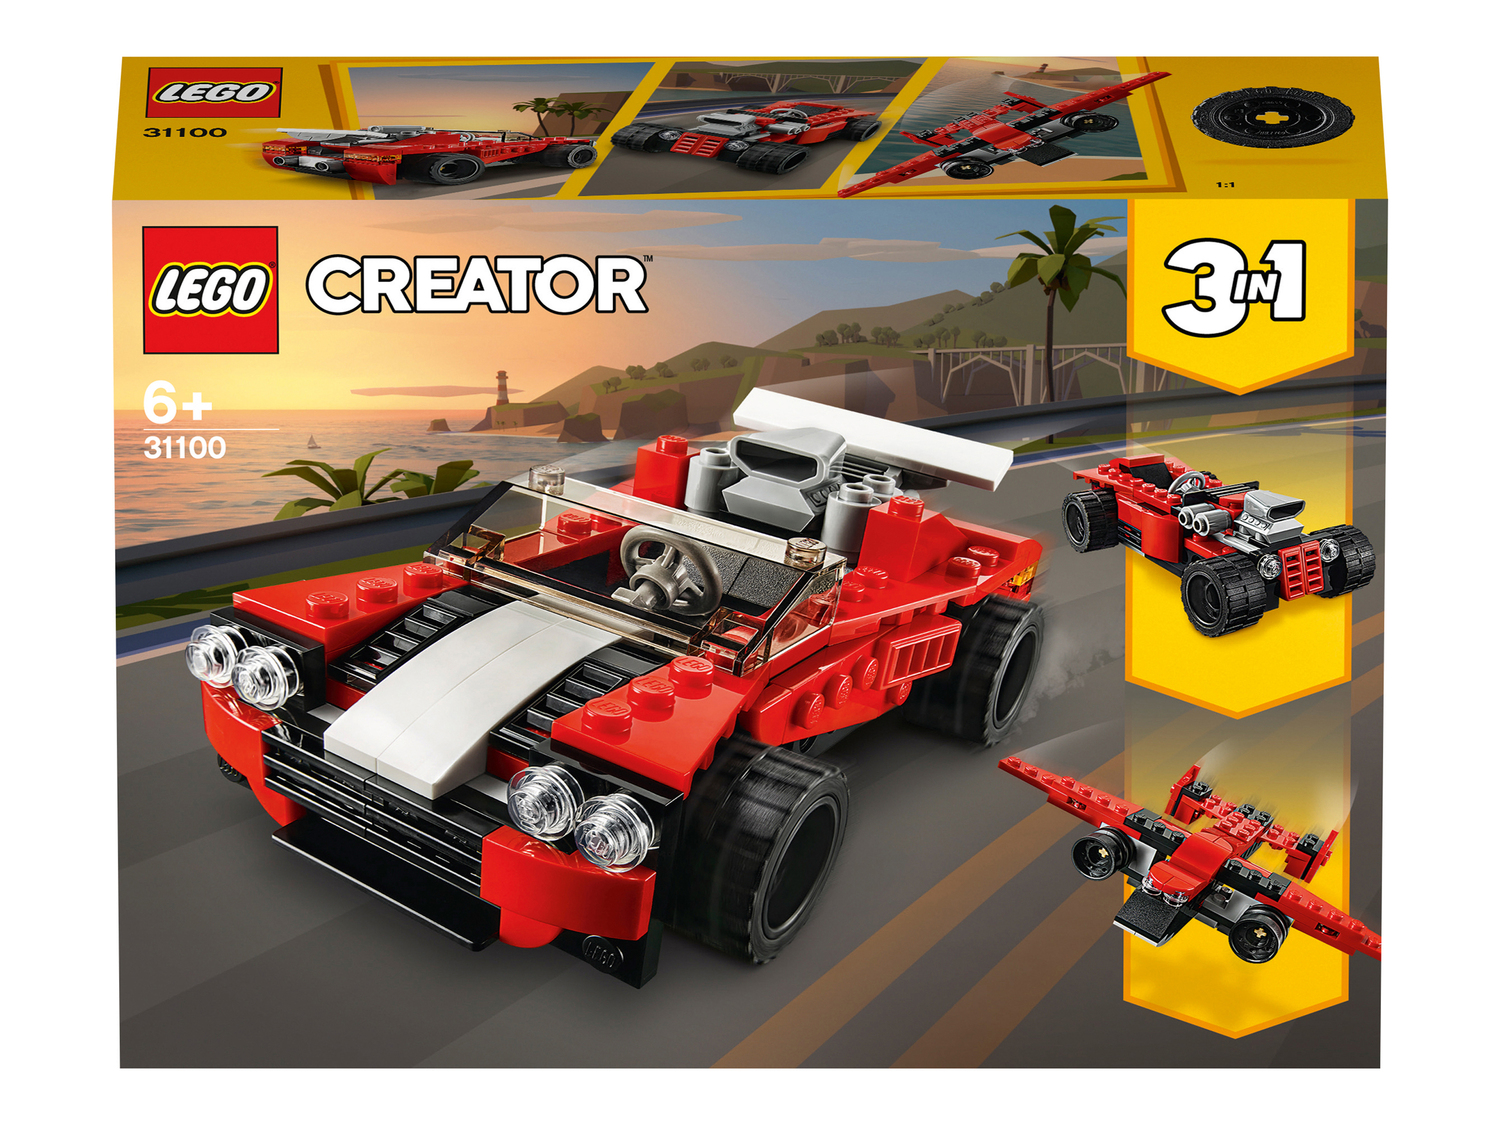 Costruzioni Lego, Classic, Technic, City, Ninjago, Creator, Friends, prezzo 8.99 ...